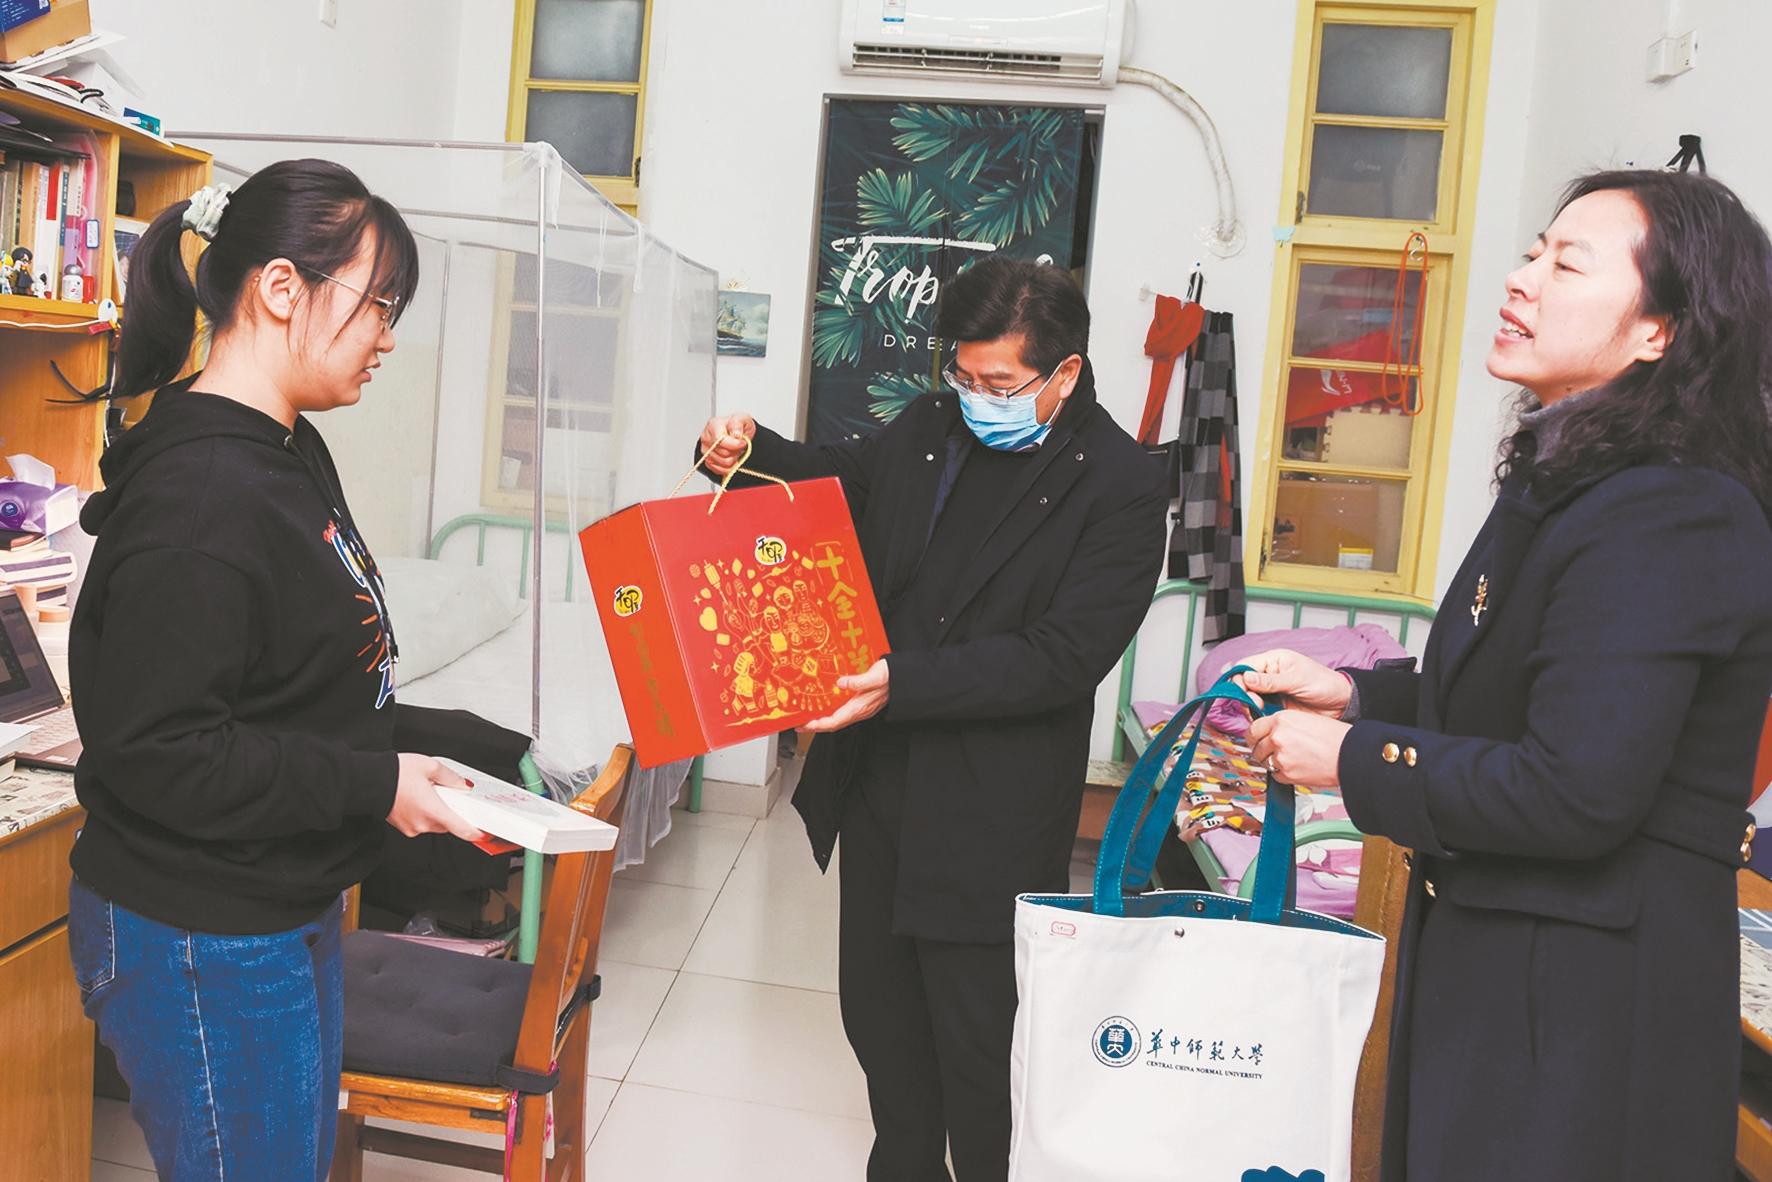 贴春联品读经典多种活动迎新年 武汉高校为留校学生“花式送温暖”